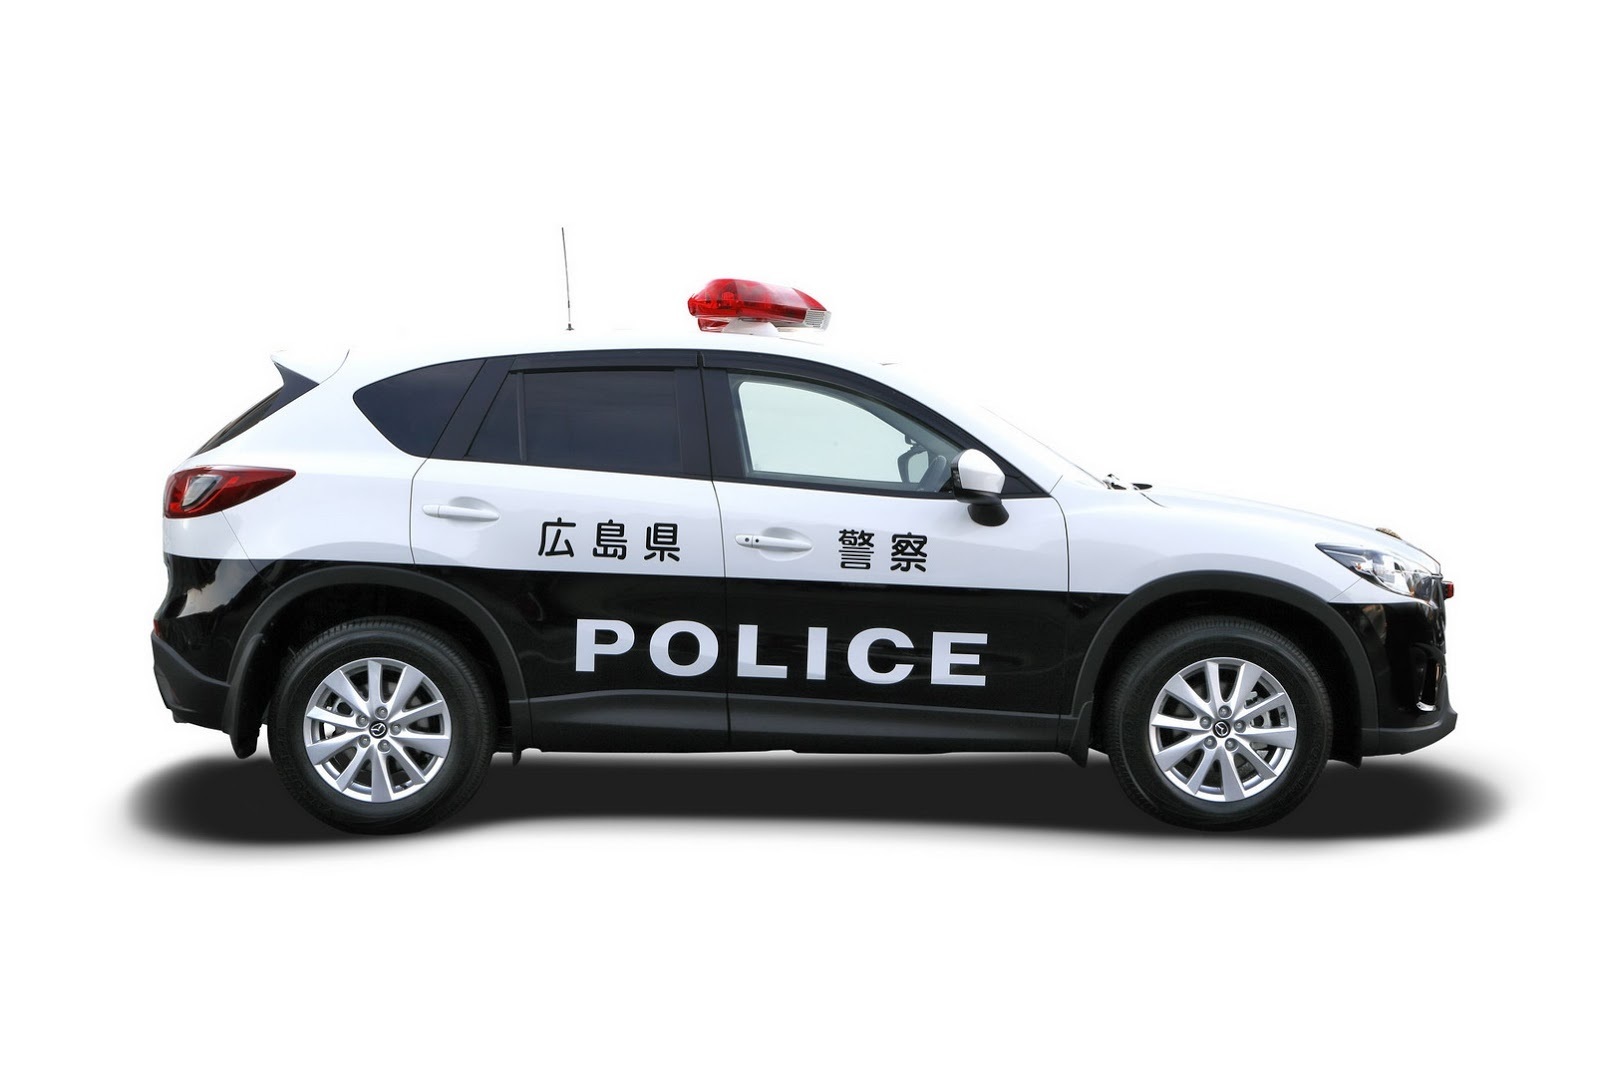 รถตำรวจญี่ปุน  Mazda CX5